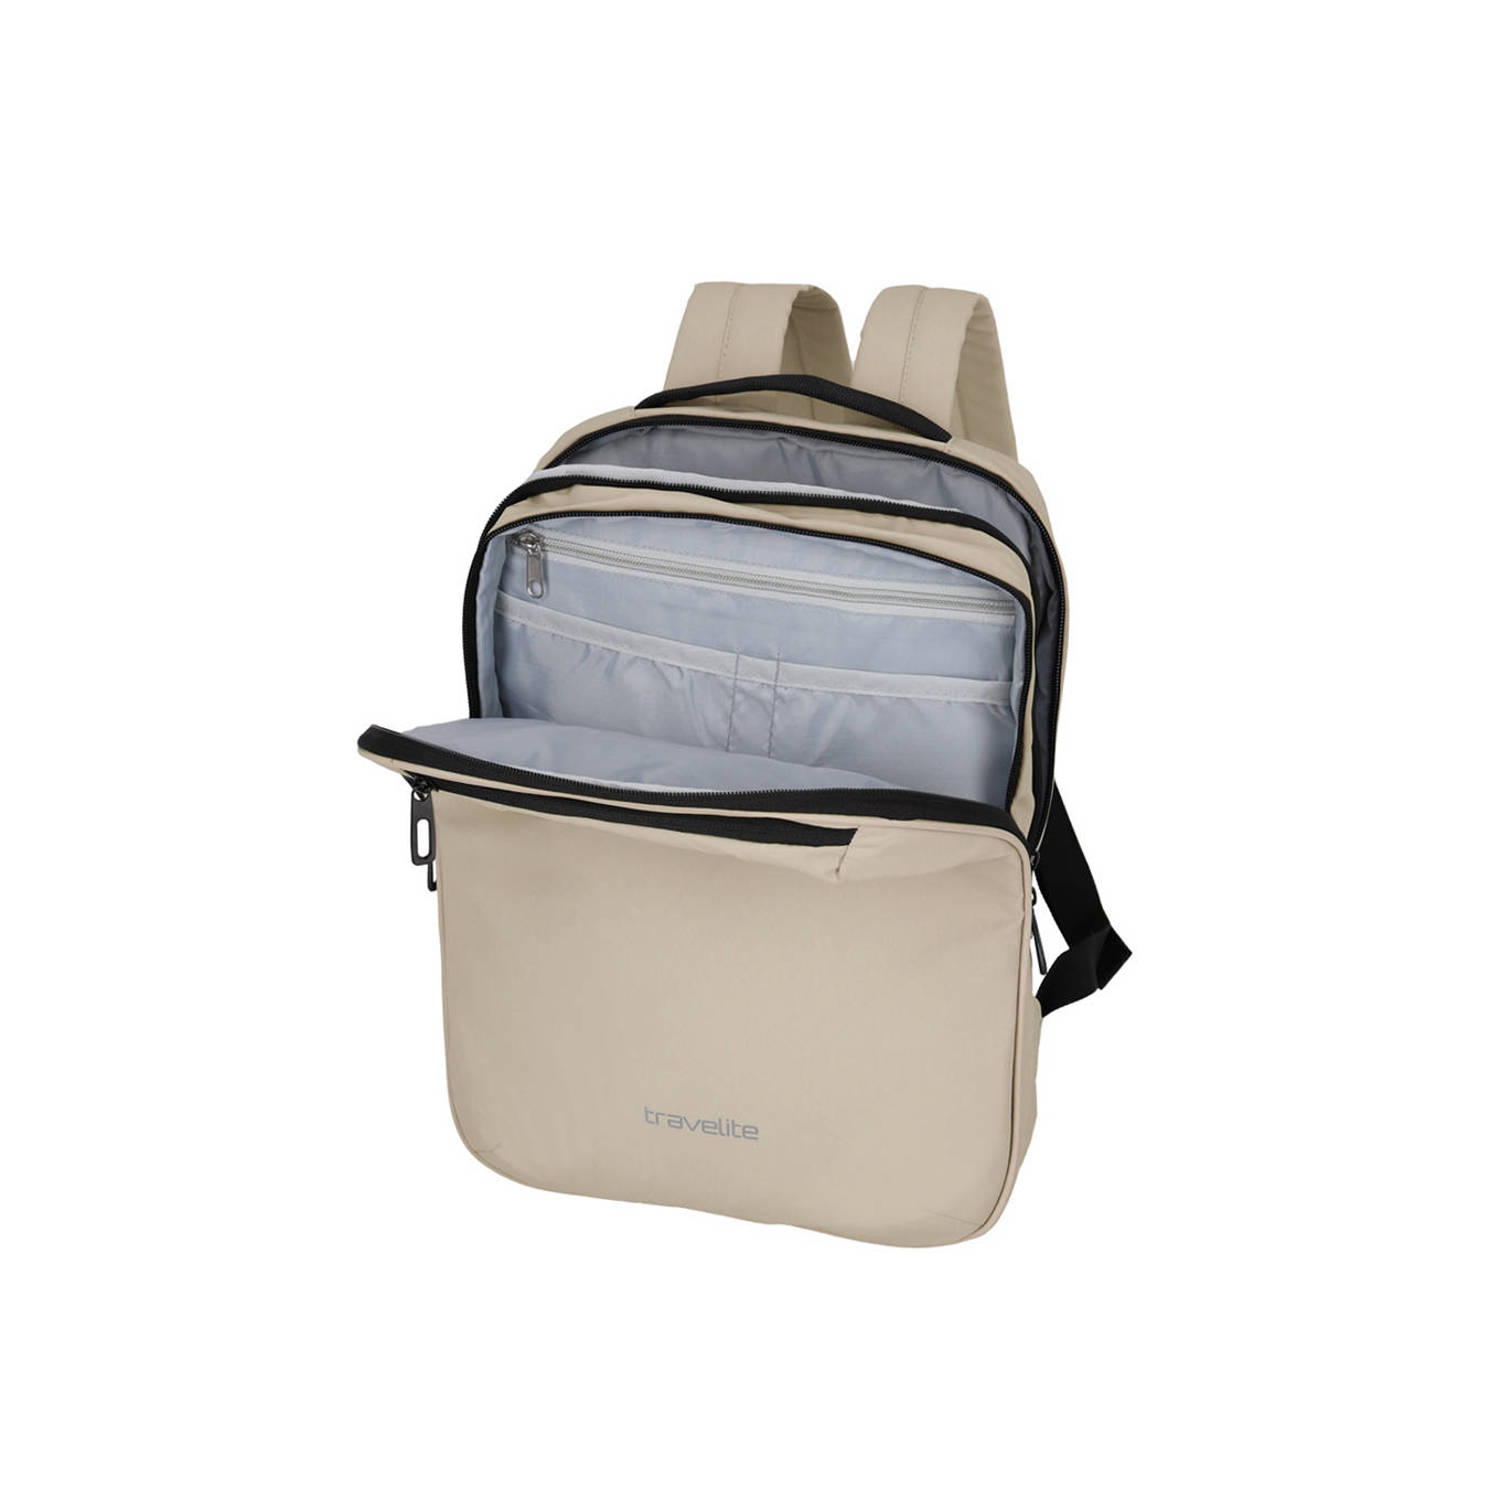 Travelite rugzak Basics Backpack ecru